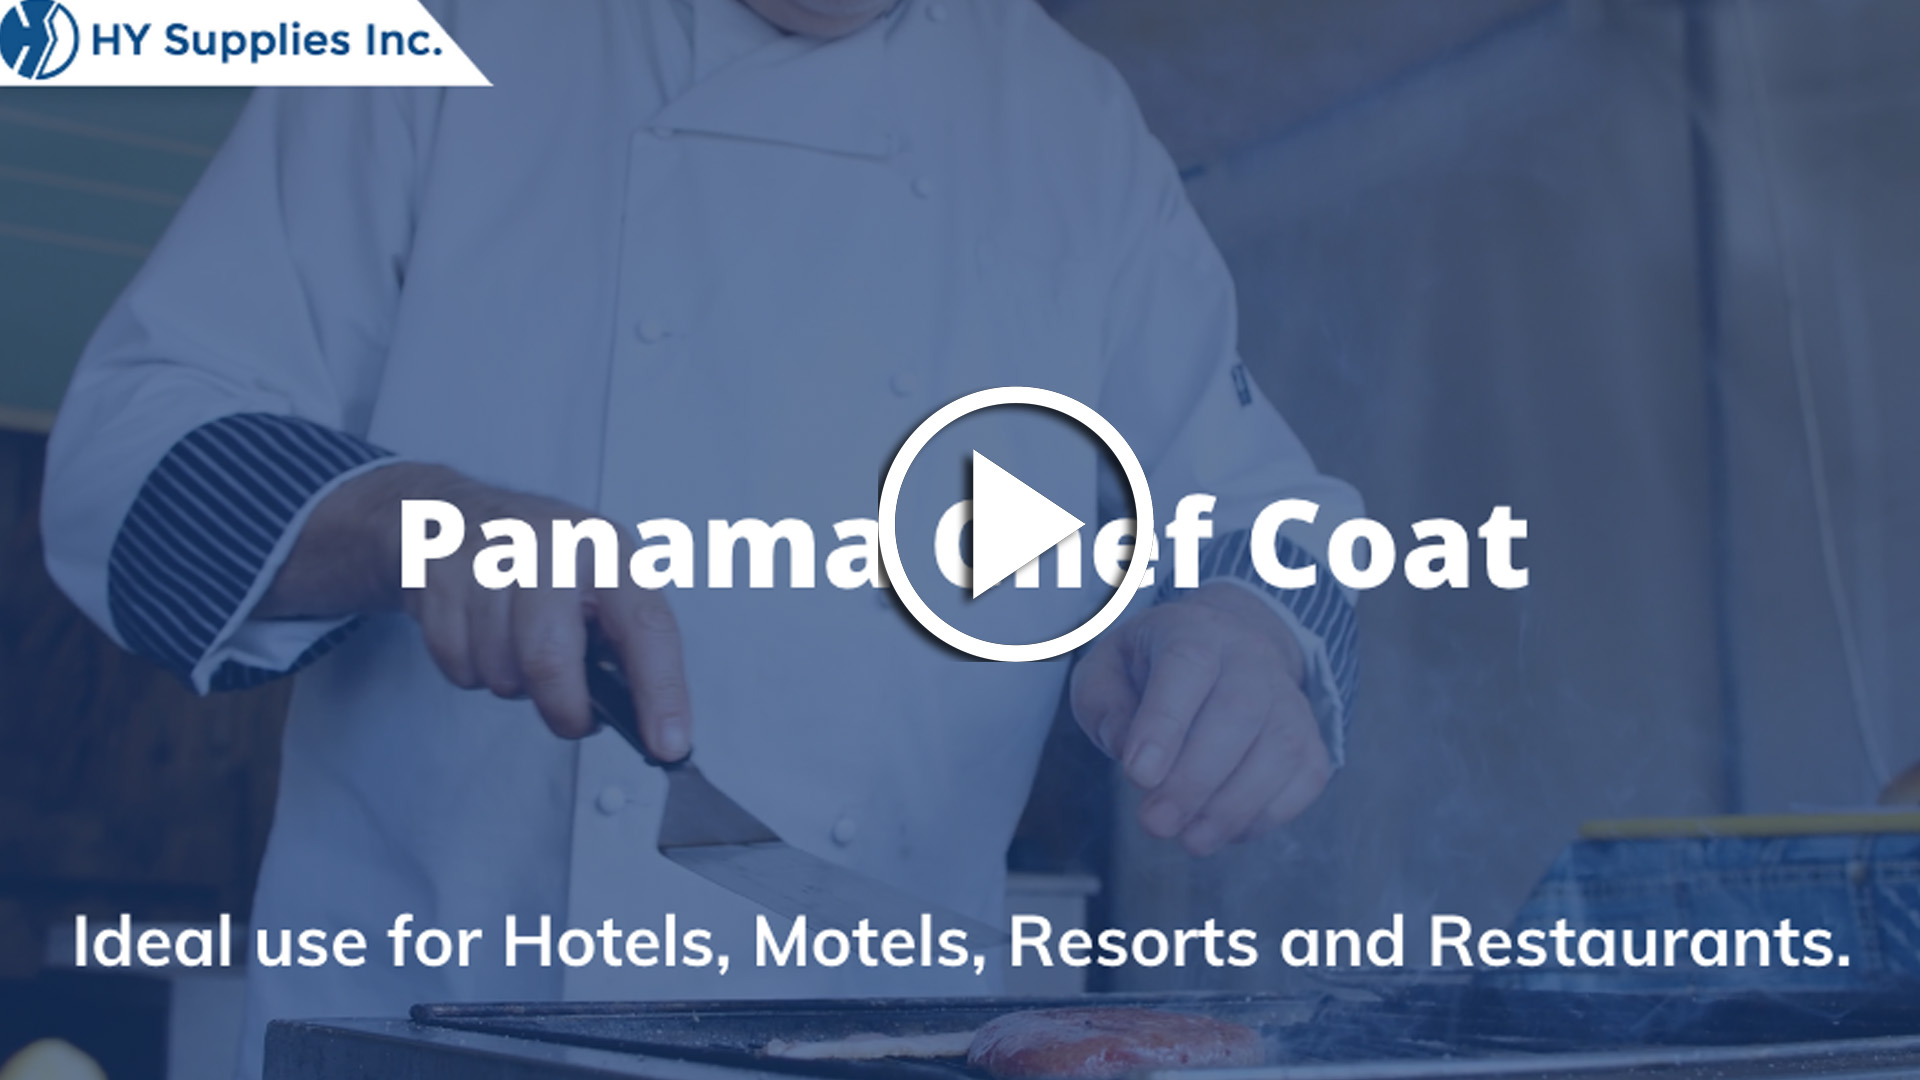 Panama Chef Coat